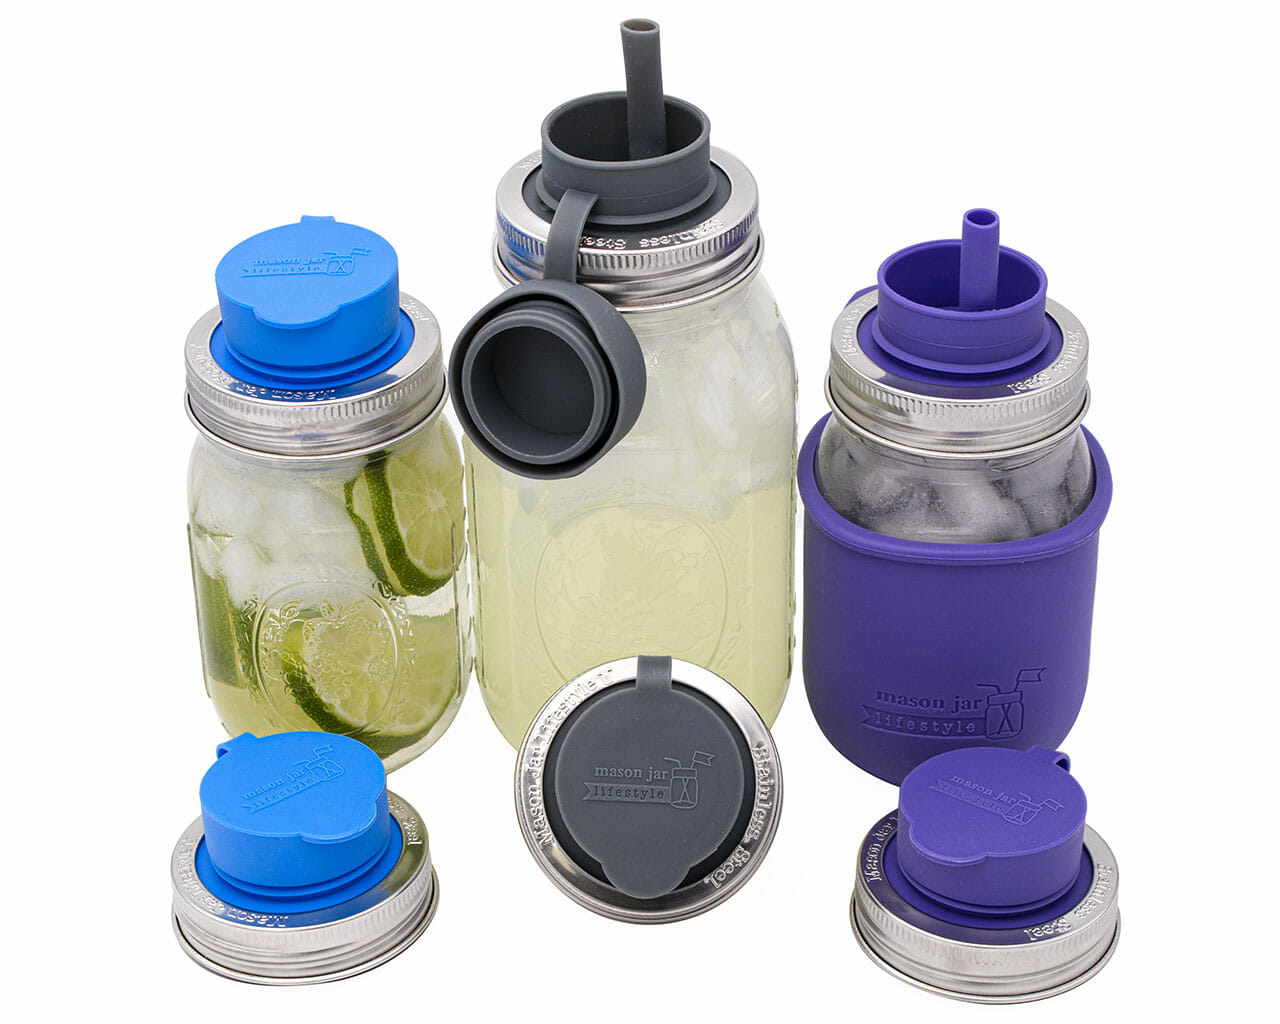 Regular Mouth Mason Jar Water Bottle Set 